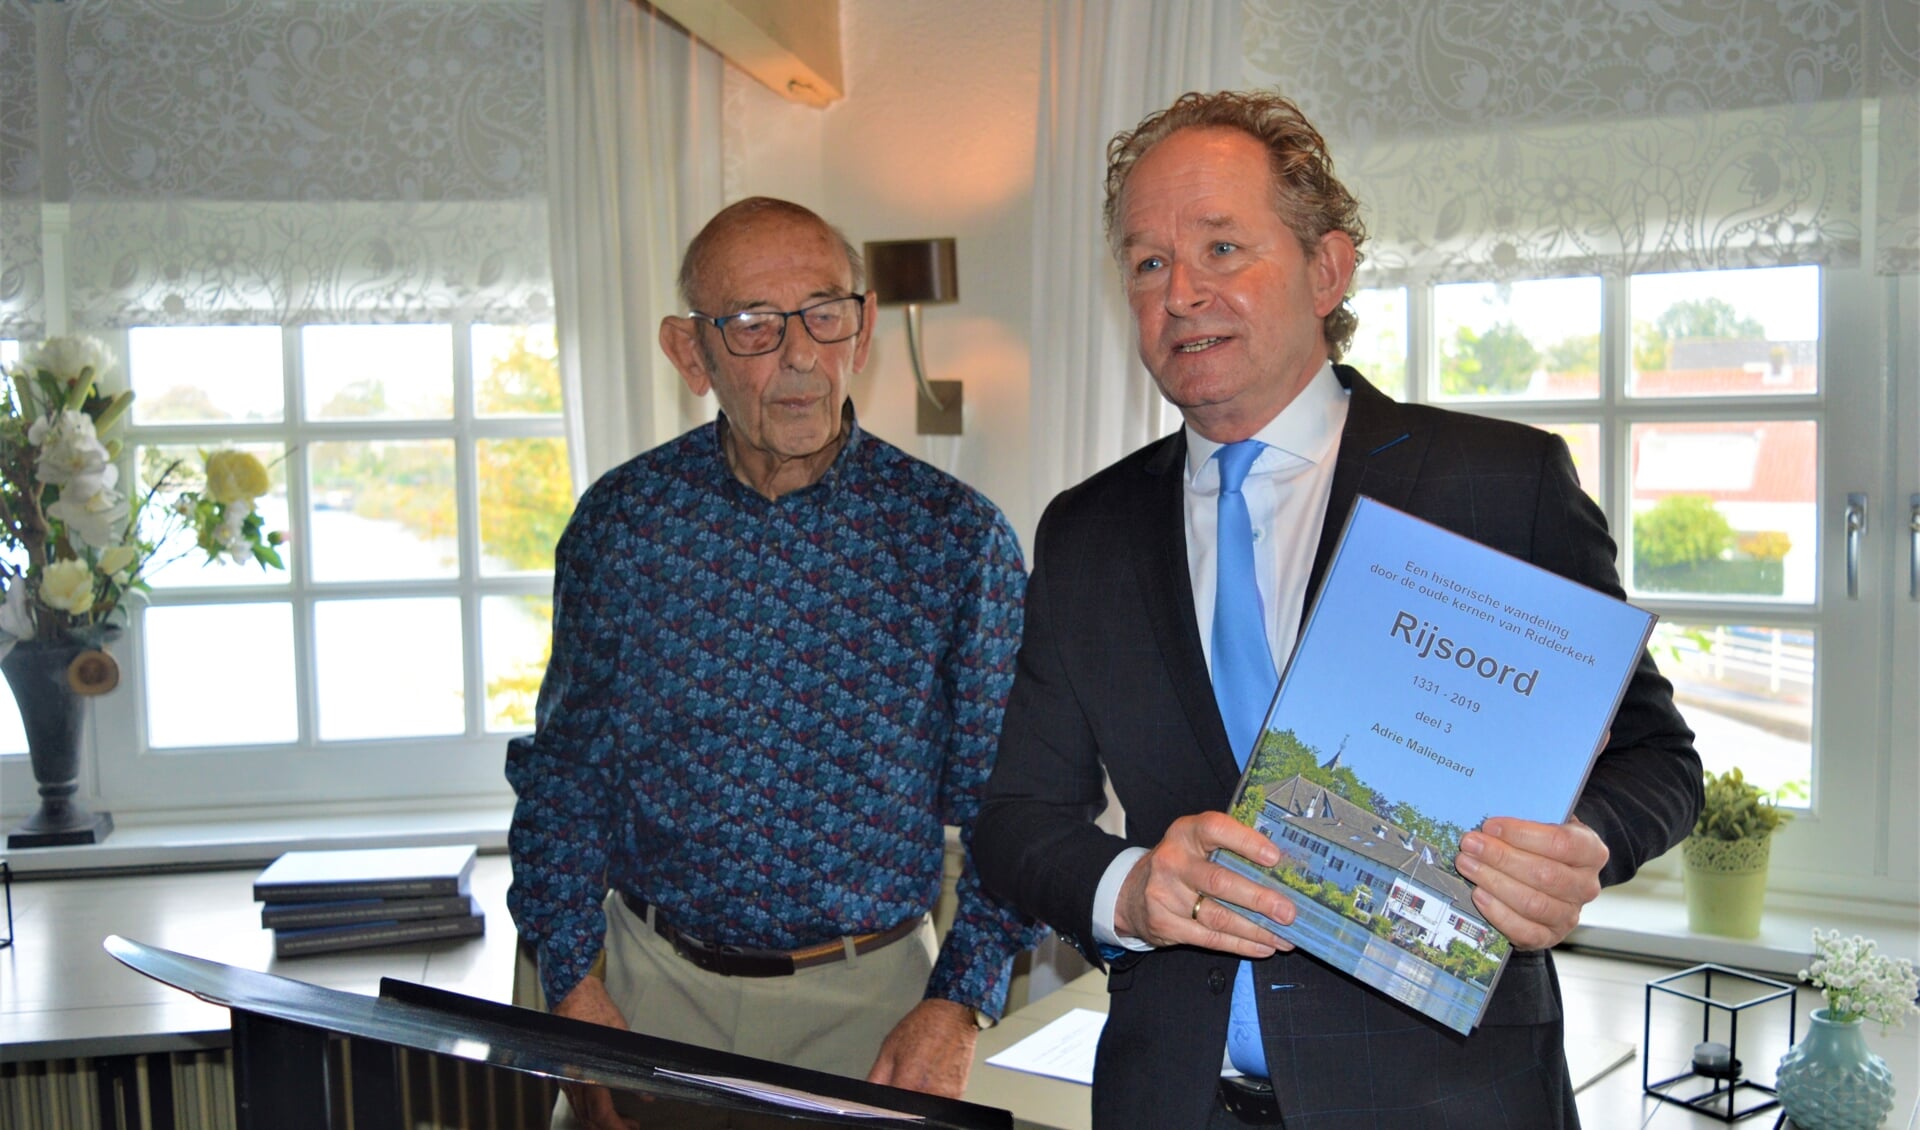 Wethouder Japenga prees met het boek in handen Adrie Maliepaard